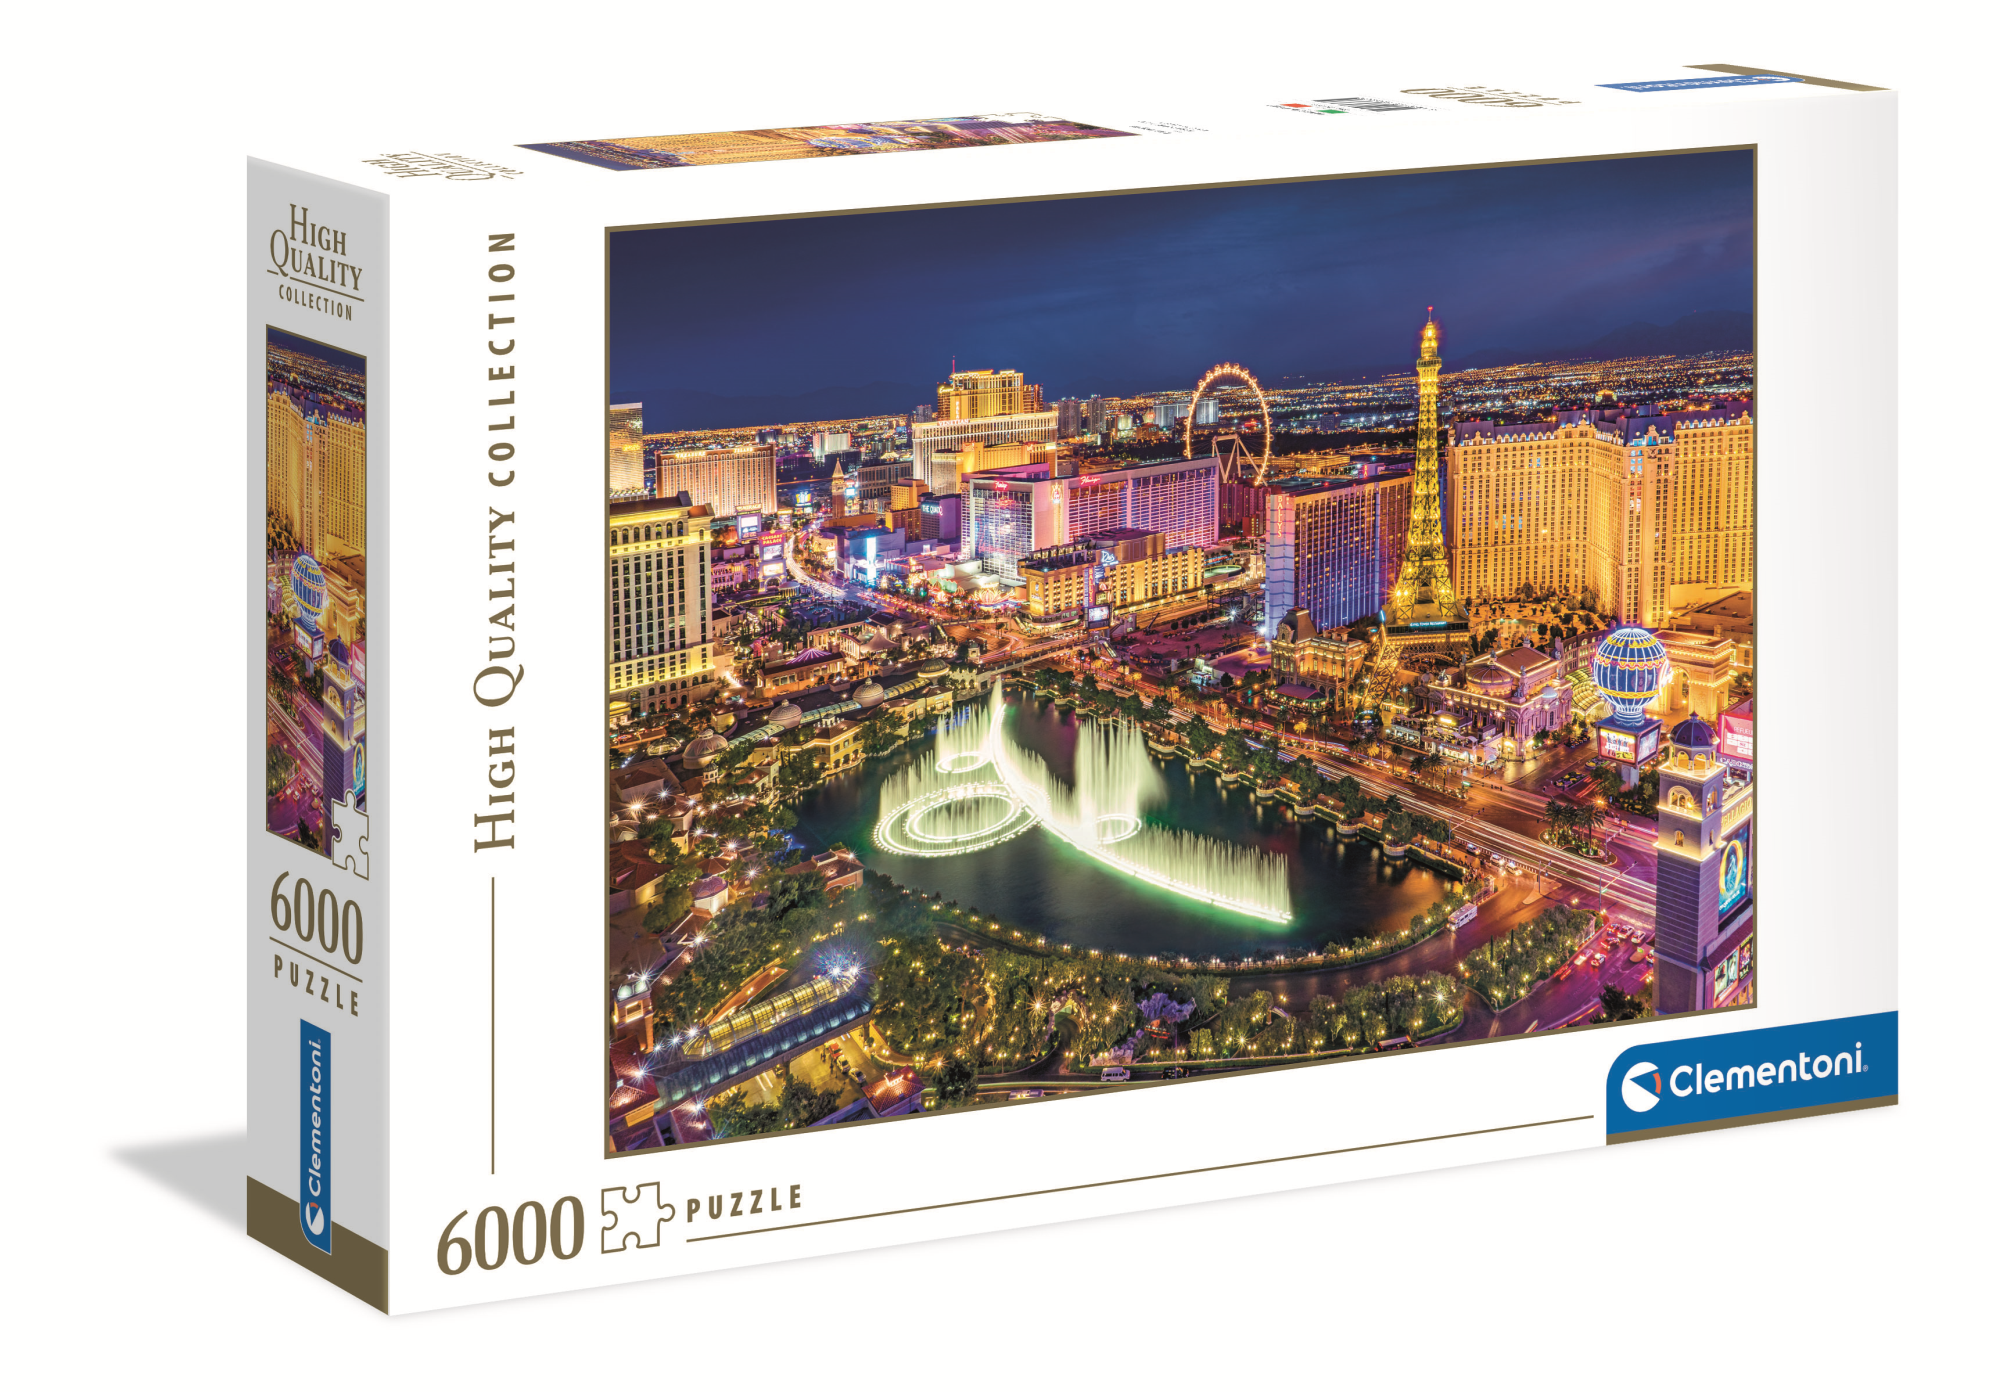 Merchandising Clementoni: Puzzle 6000 Pz - High Quality Collection - Las Vegas NUOVO SIGILLATO, EDIZIONE DEL 10/02/2021 SUBITO DISPONIBILE